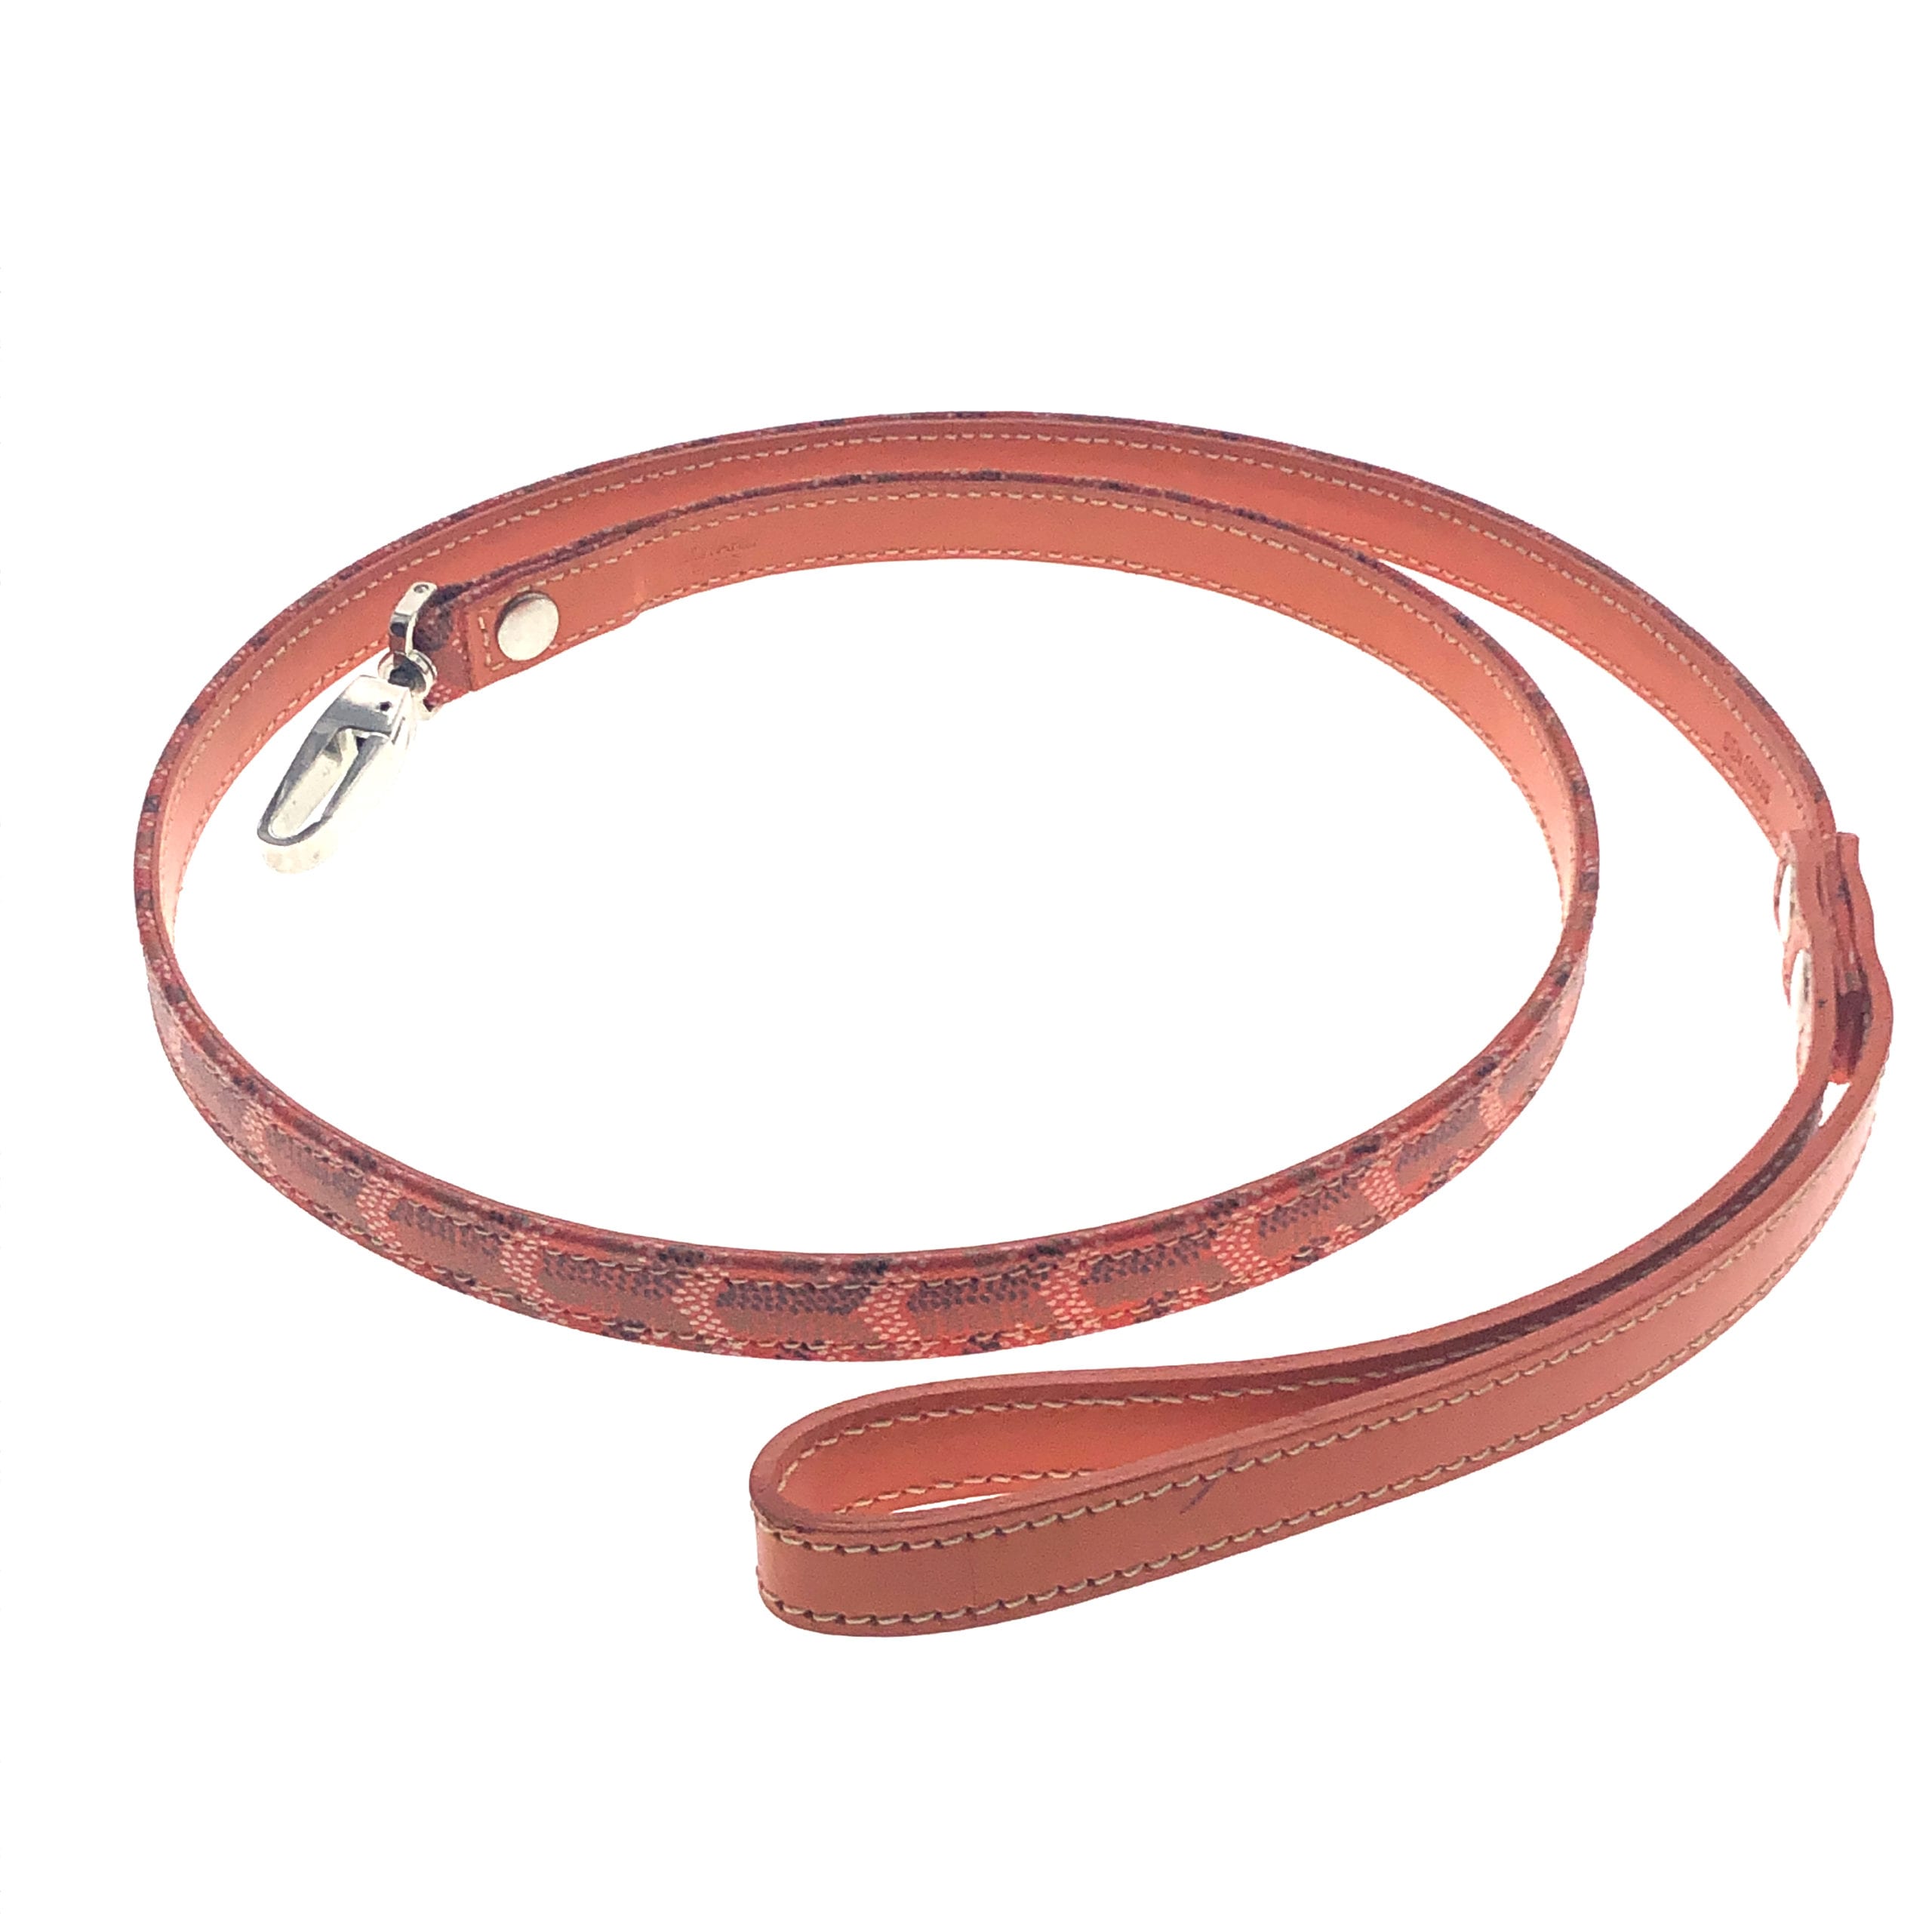 goyard leash and collar